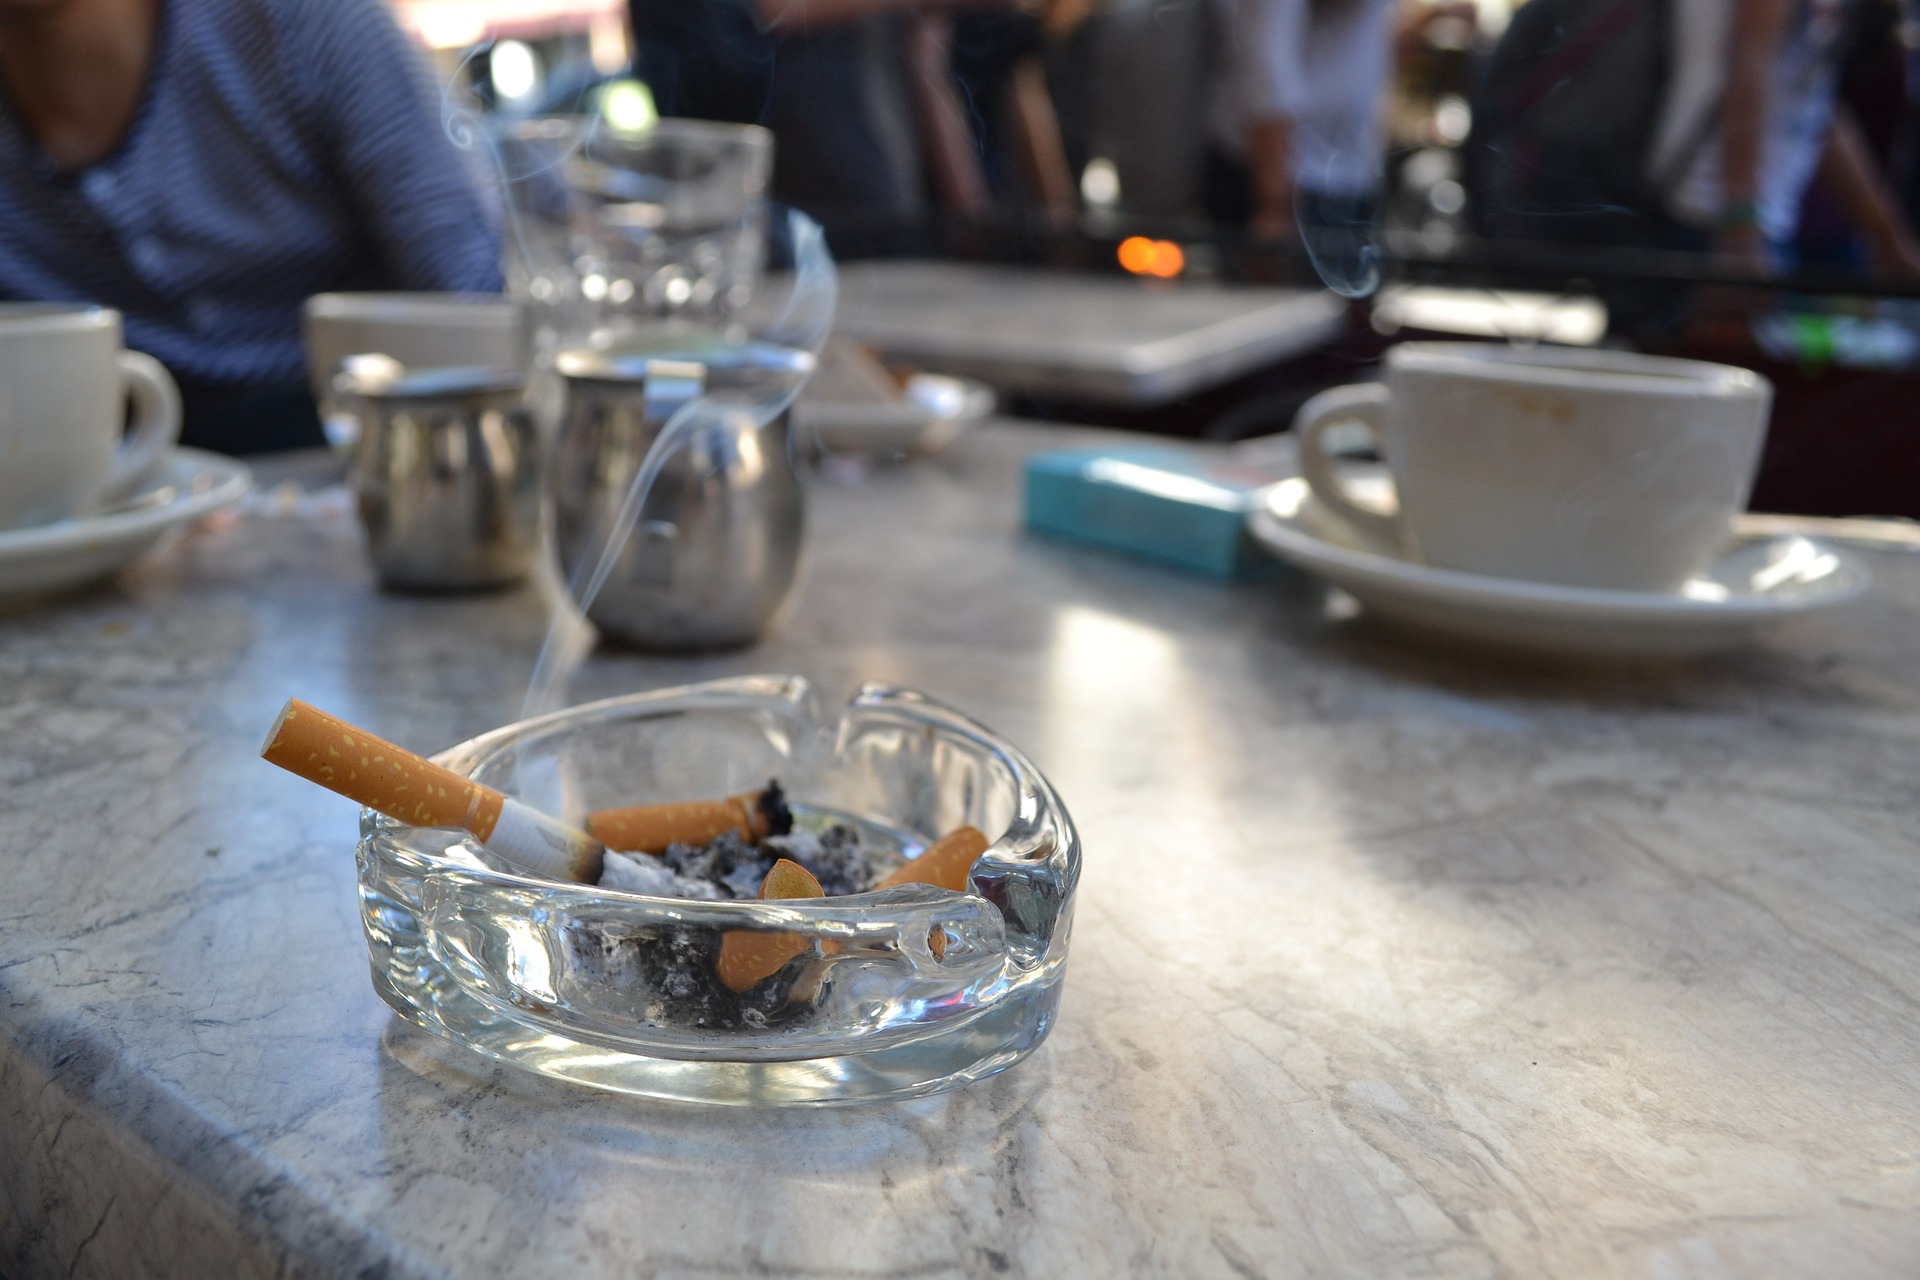 U Hrvatskoj puši 38% ljudi, a najviše ih je u dobi od 25 do 35 godine